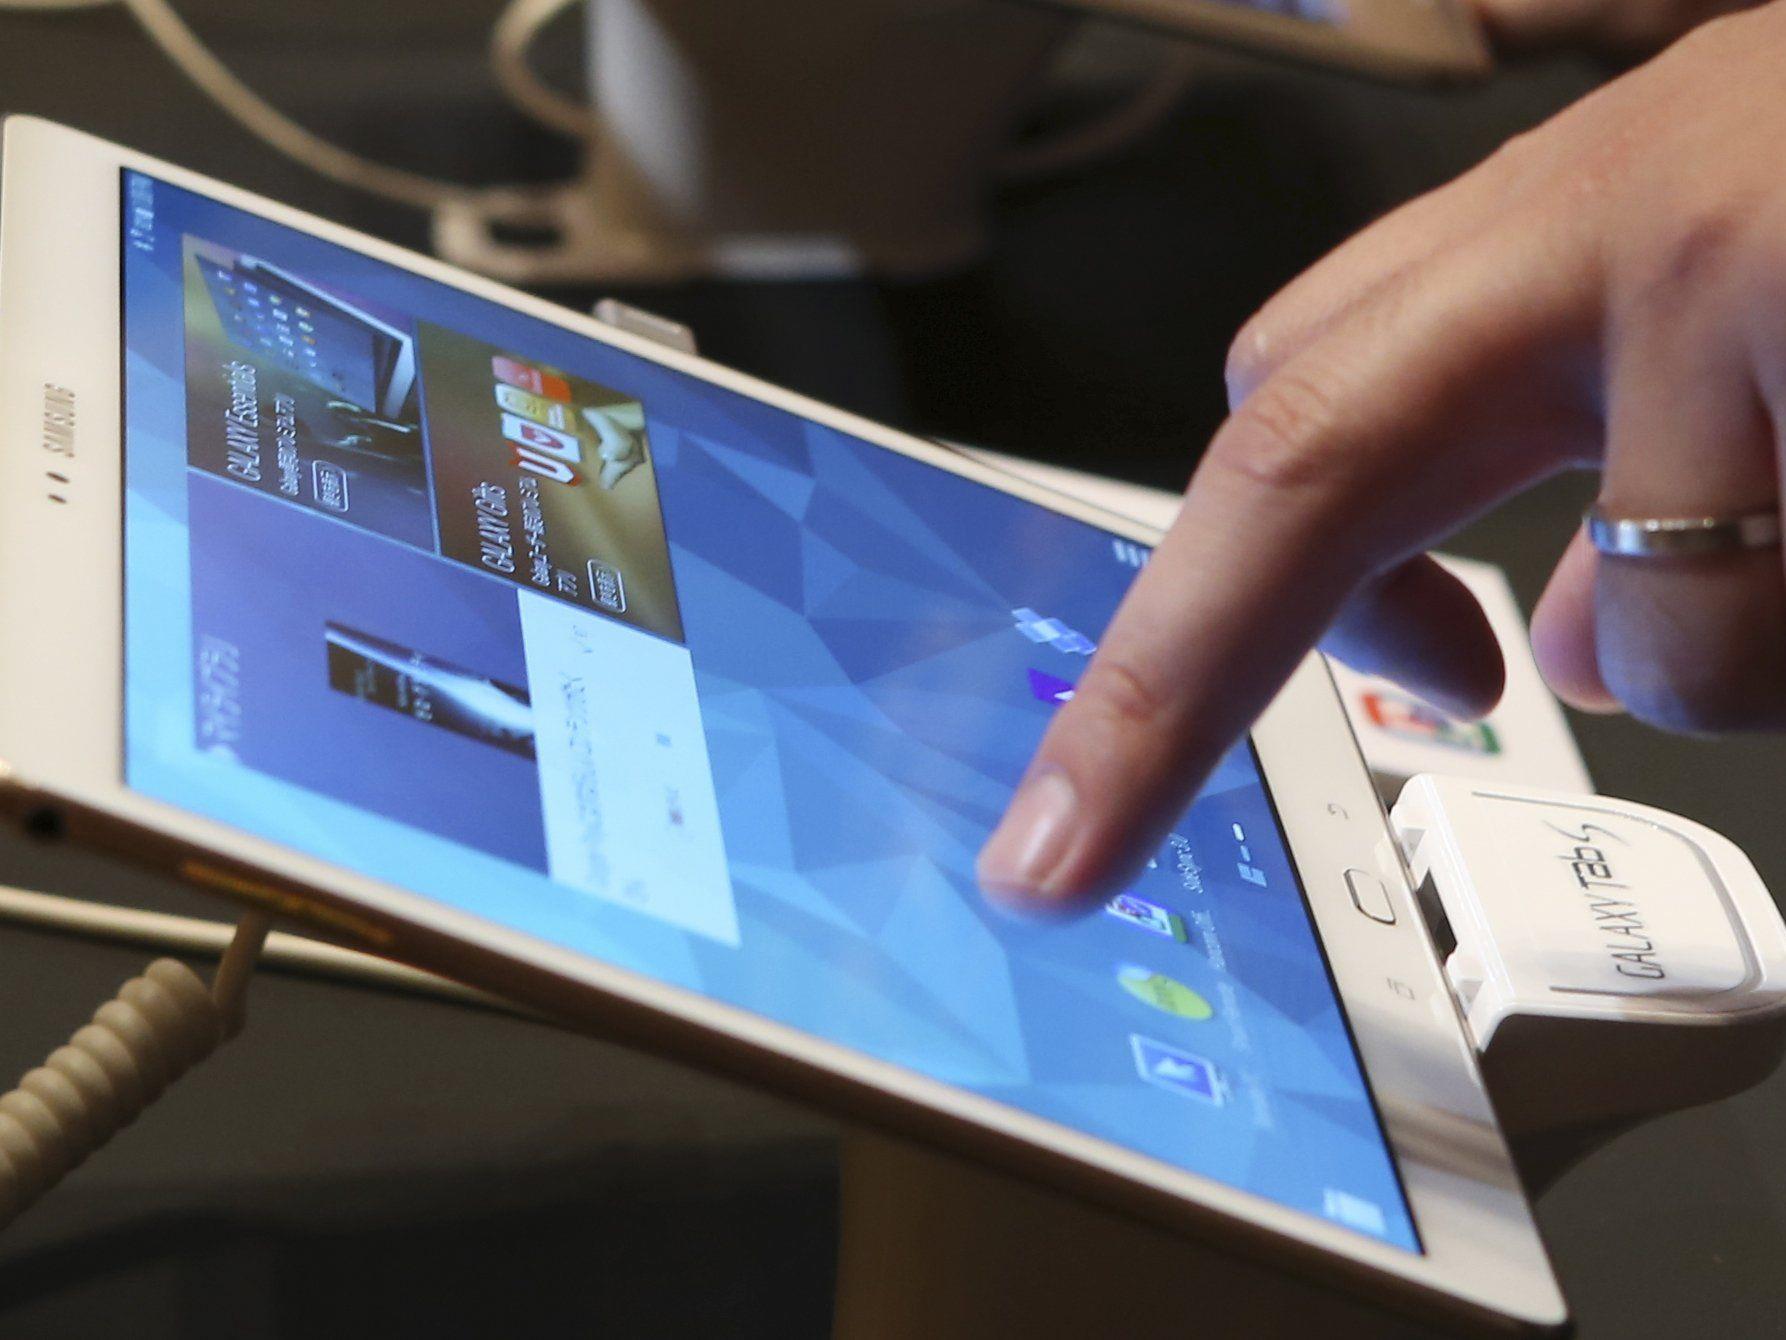 In Asien drückt das Interesse für Smartphones und Tablets deutlich auf den PC-Absatz.